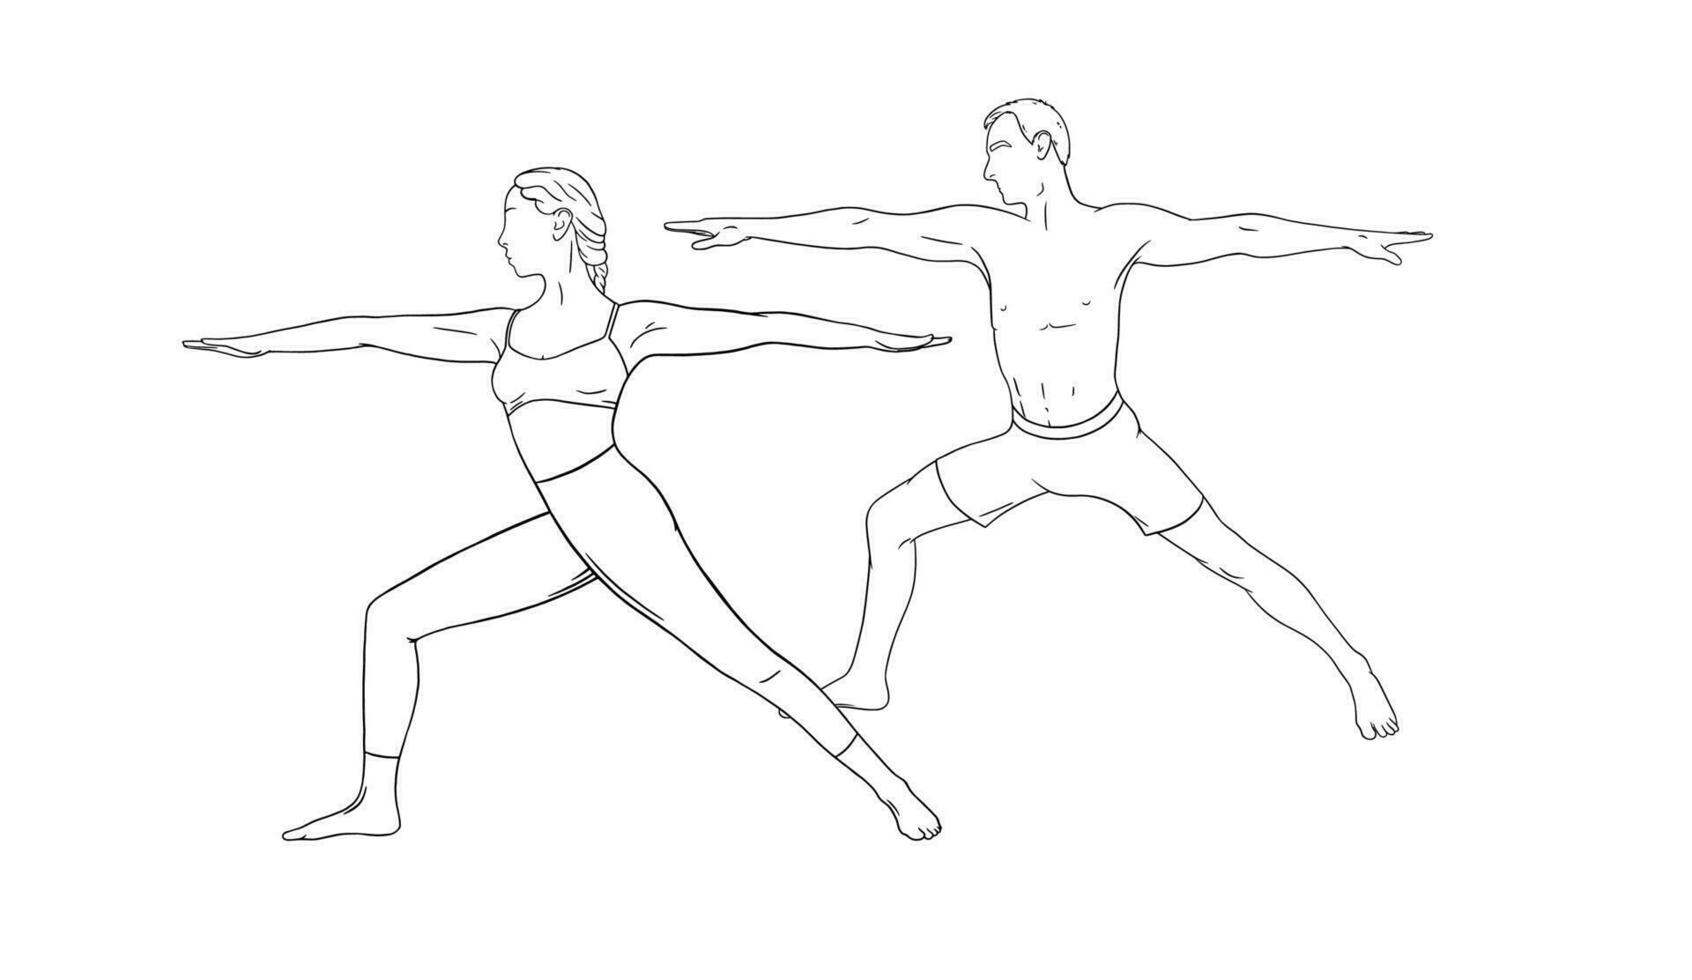 Yoga Krieger Asana oder Virabhadrasana ich. Frau und Mann Paar üben Yoga Asanas. Hand gezeichnet Vektor Illustration